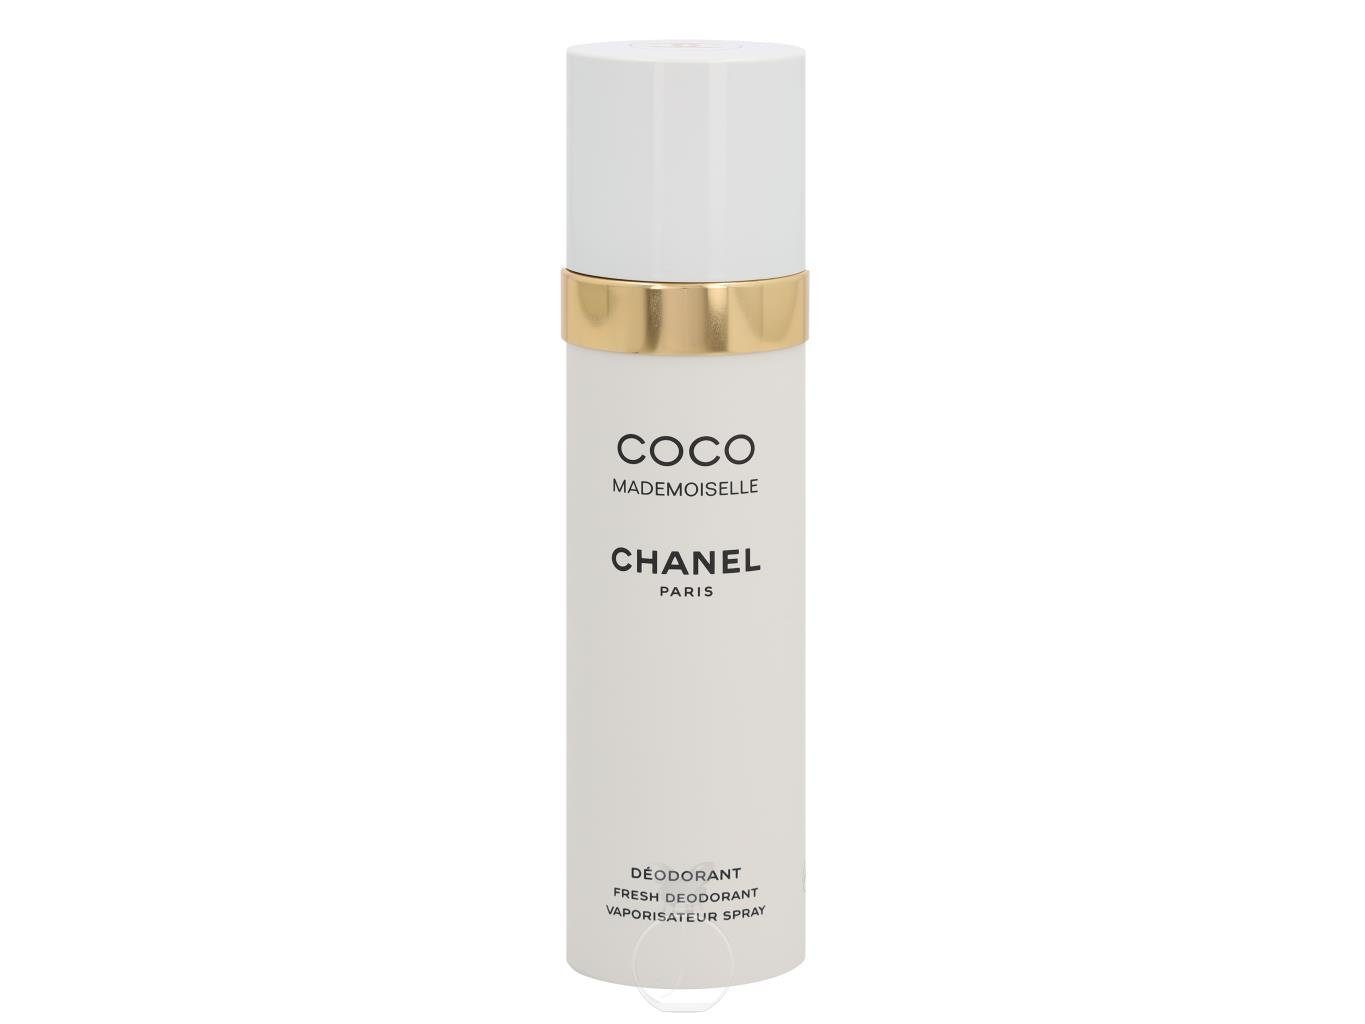 CHANEL Körperpflegeduft Chanel ml Deodorant Coco Mademoiselle 100